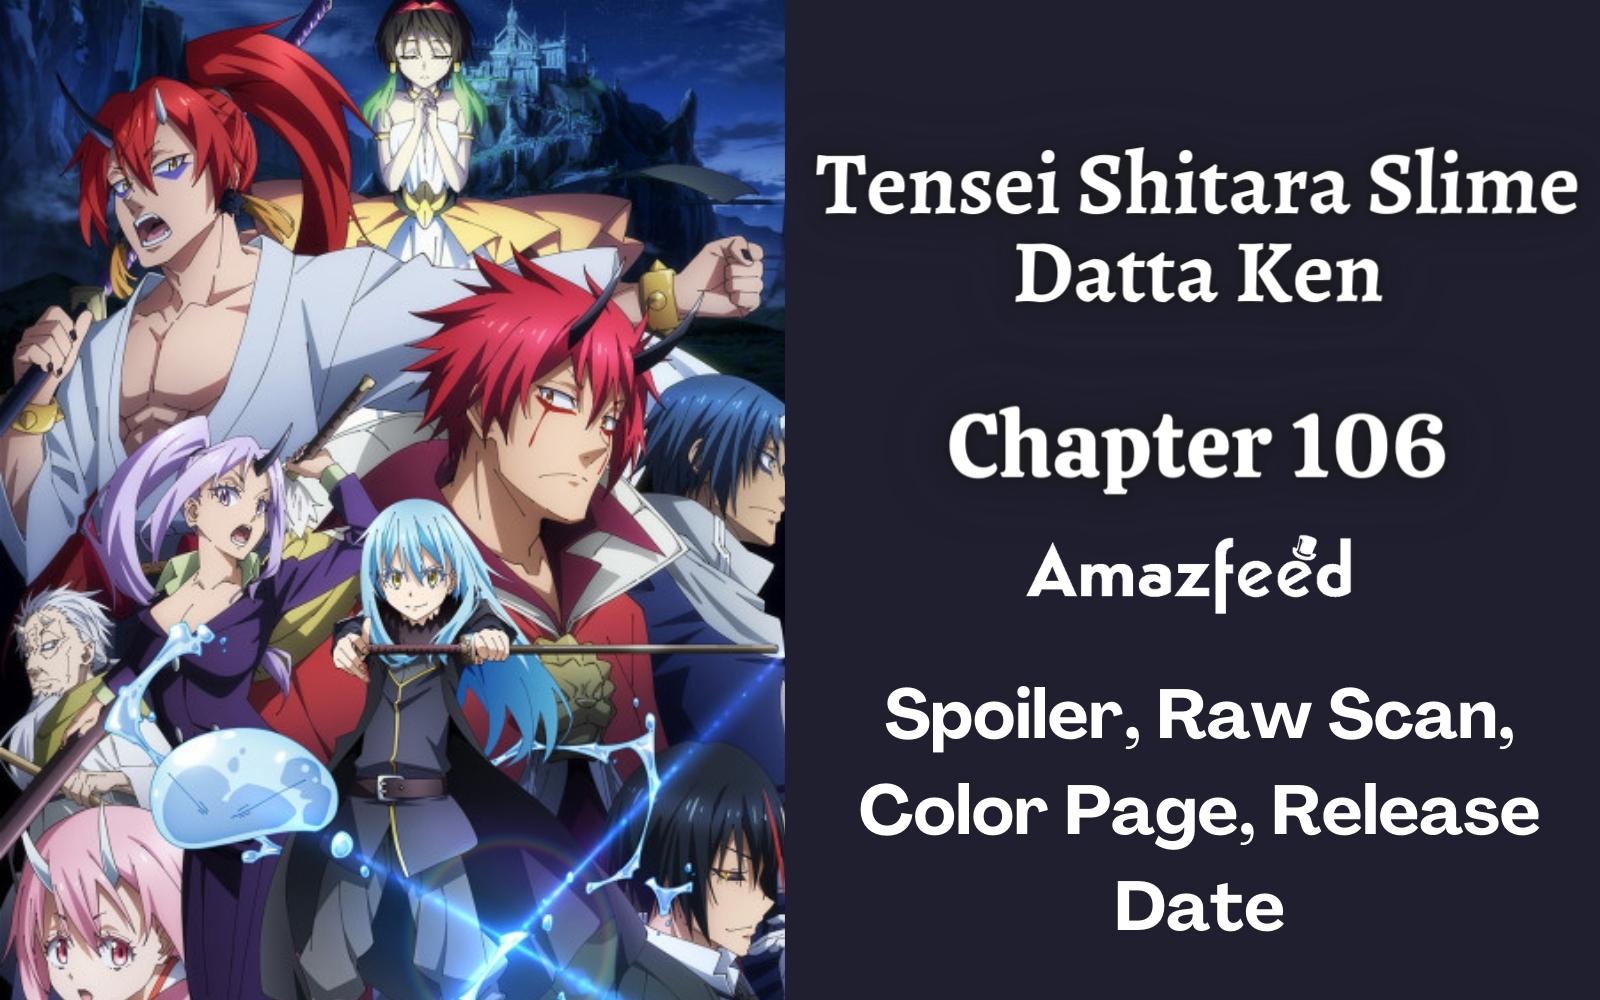 Tensei Shitara Slime Datta Ken Chapter 106: Tournament - Finals Part 1 